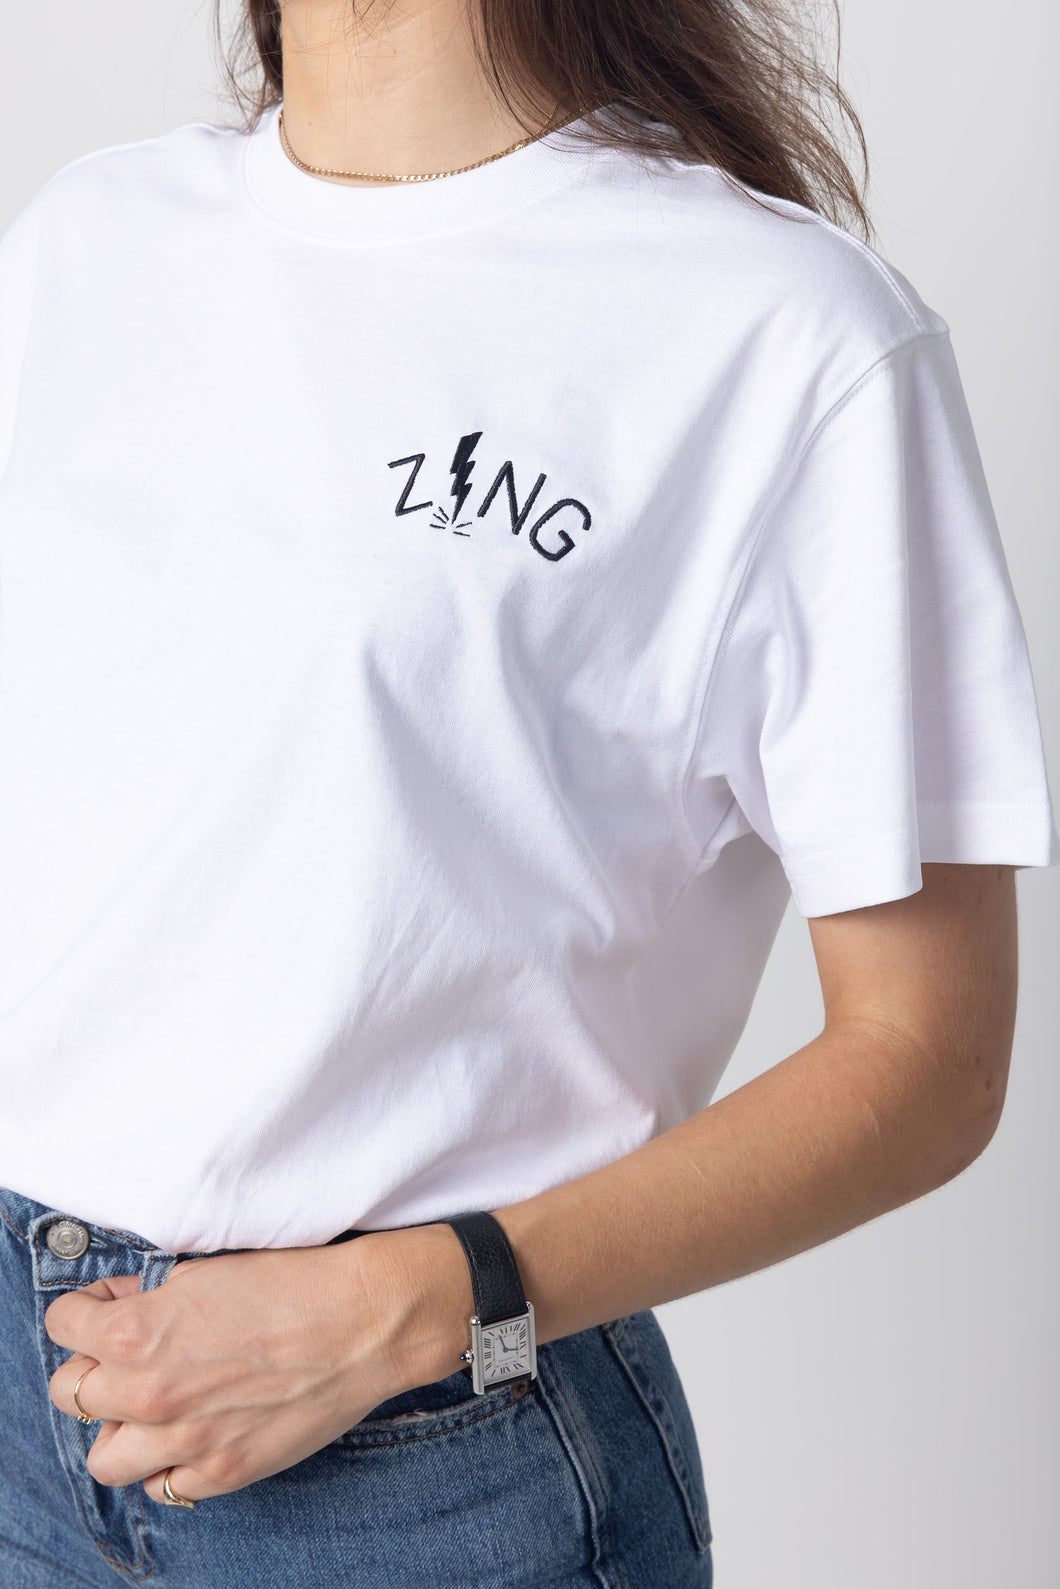 ZING t-shirt - white